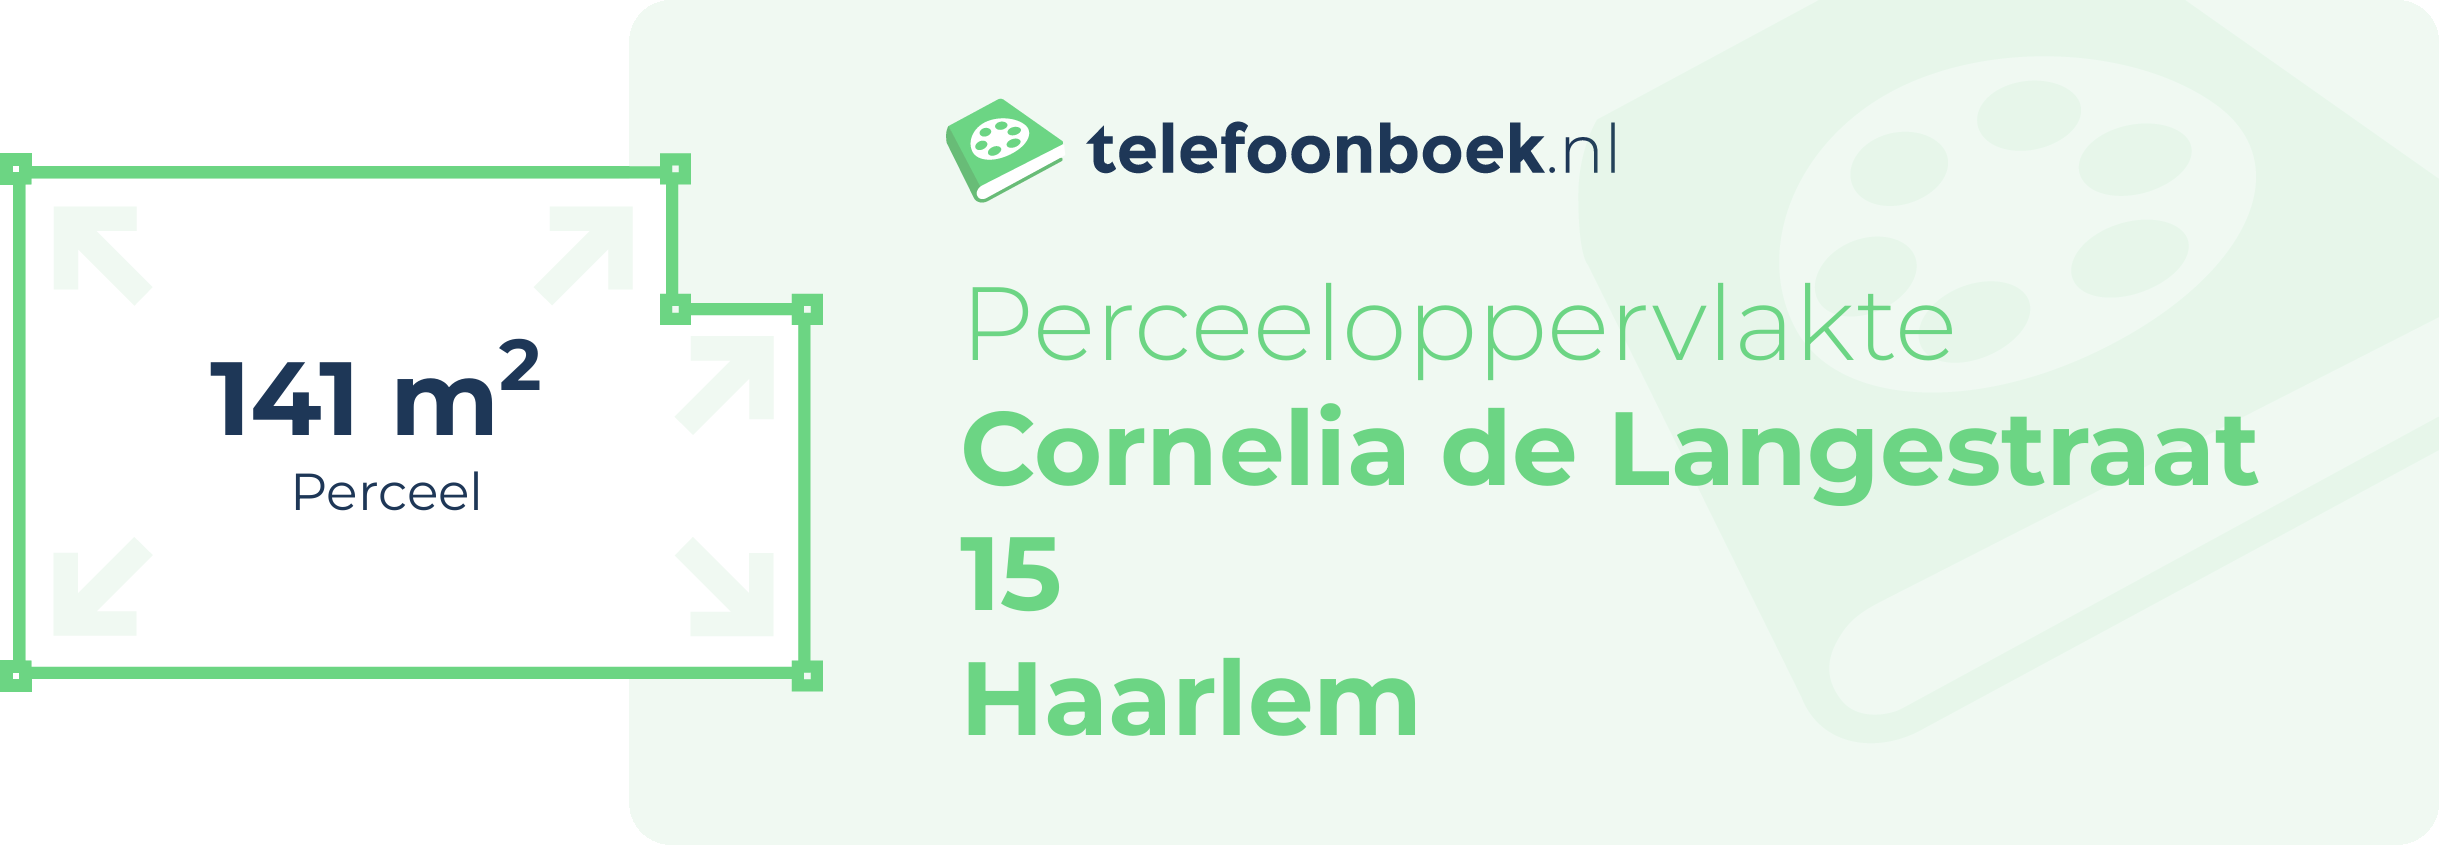 Perceeloppervlakte Cornelia De Langestraat 15 Haarlem